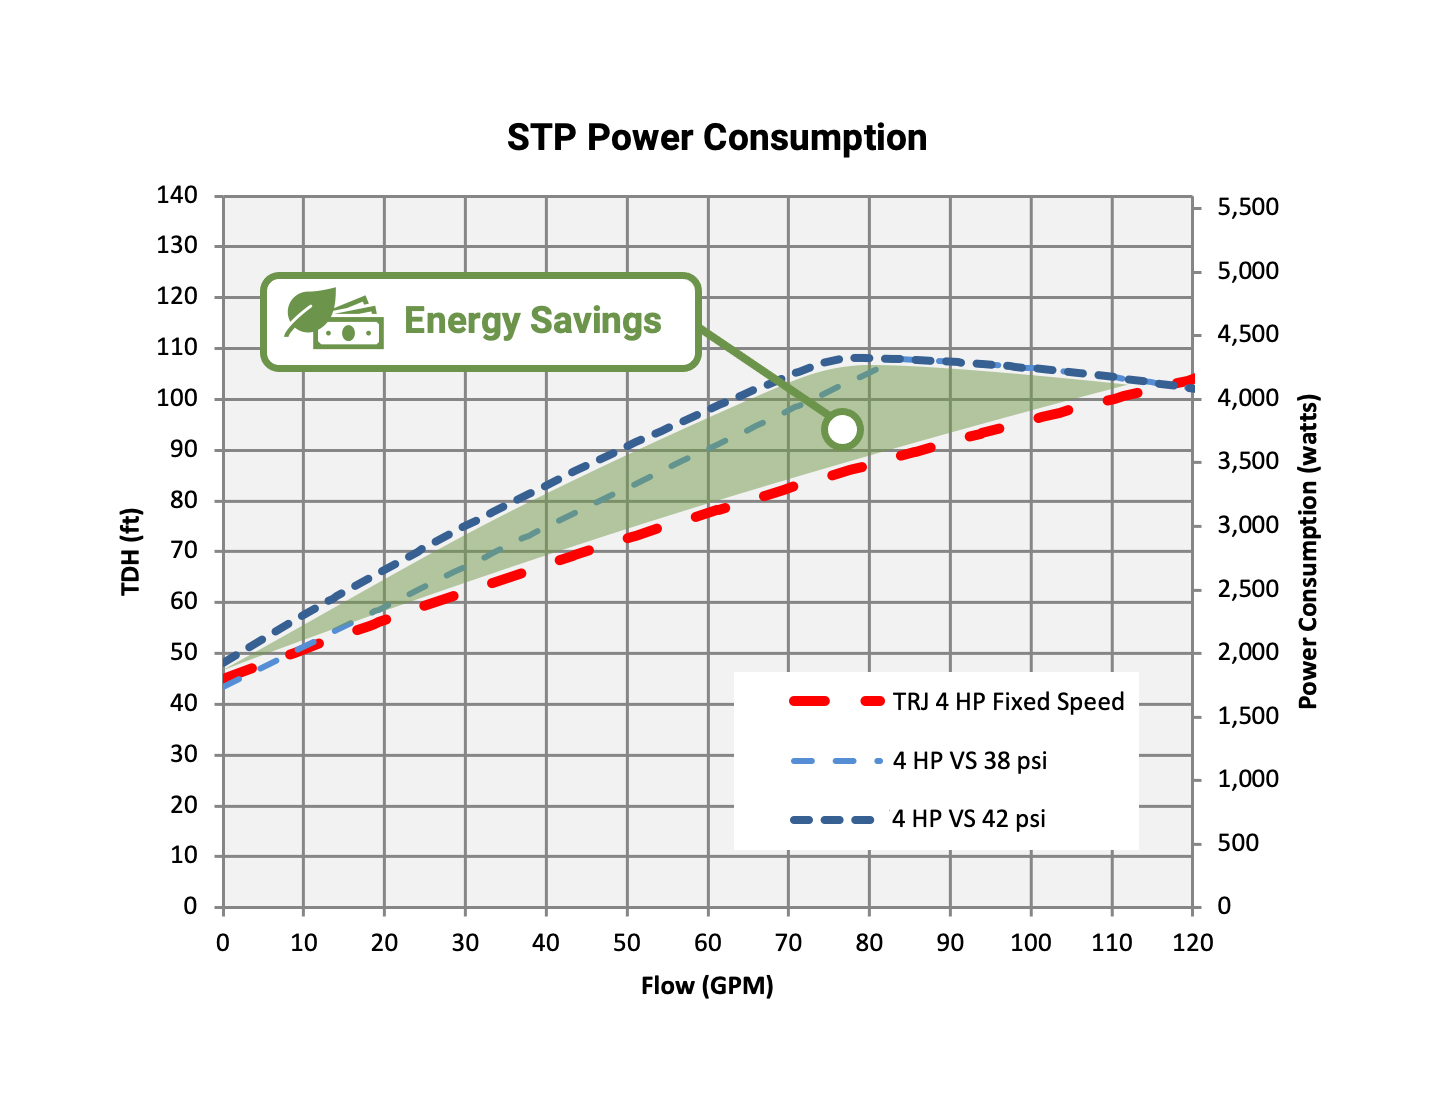 RJ STP Power Consumption